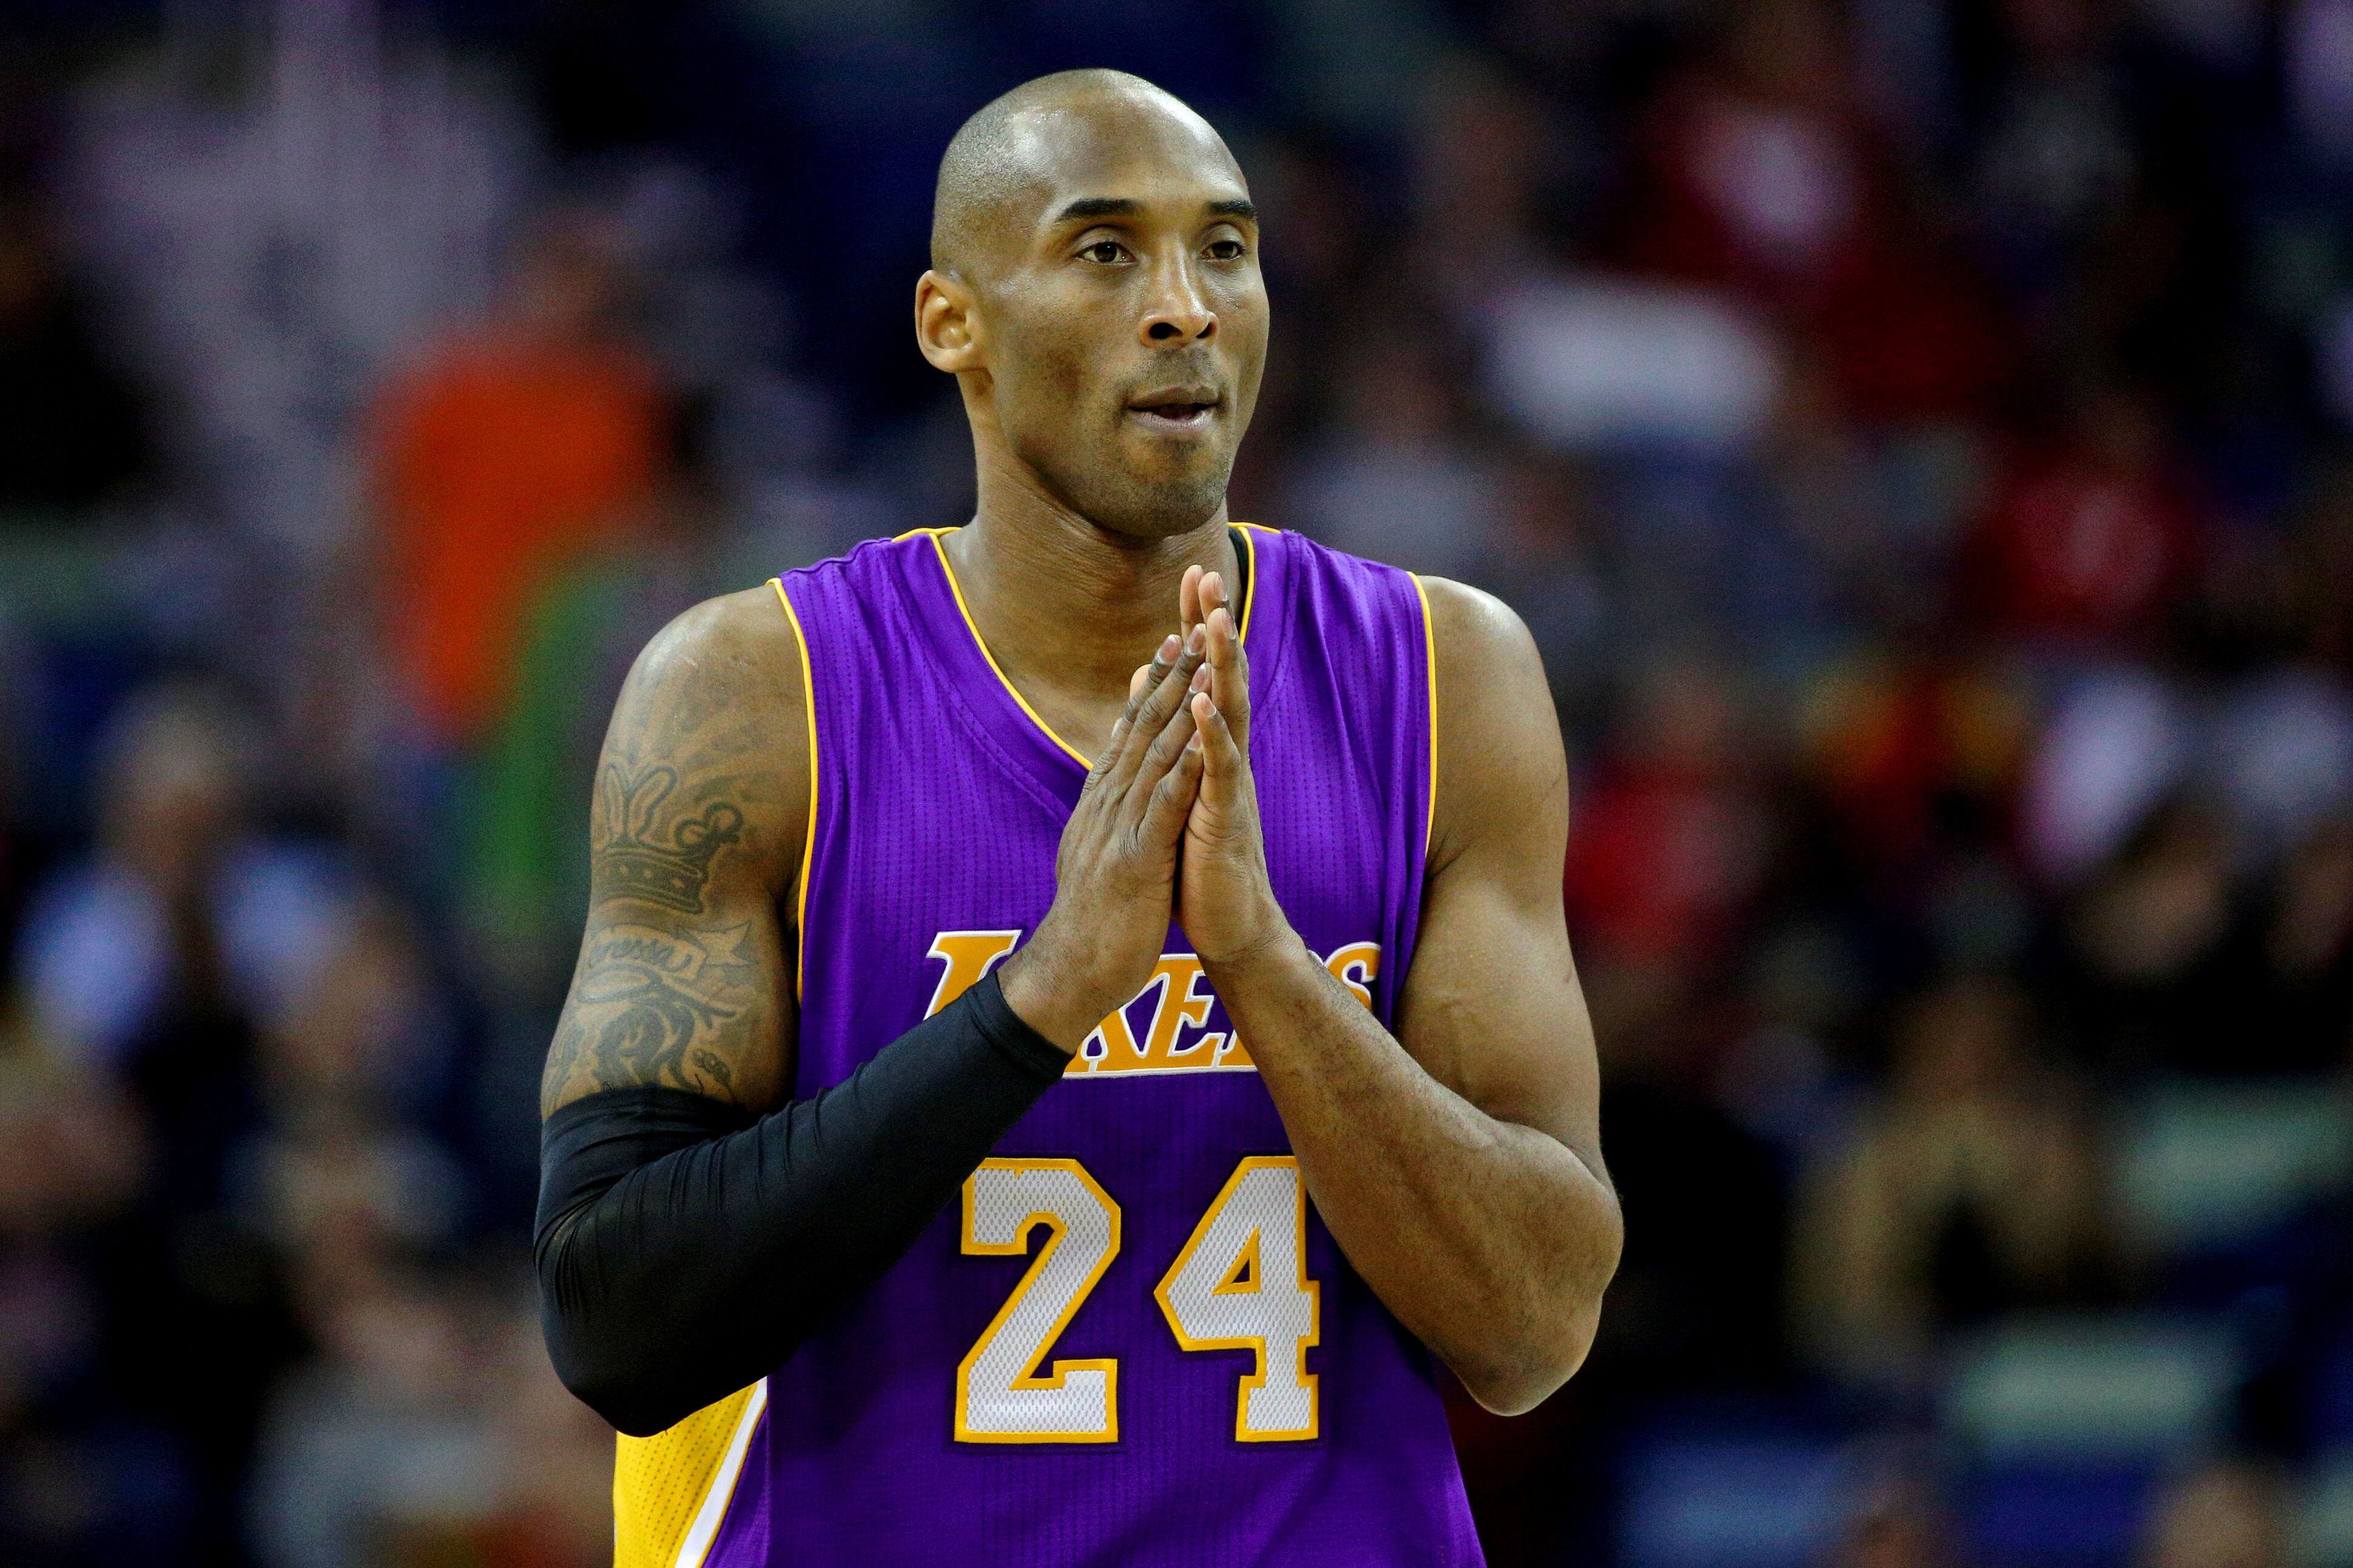 Astro da NBA, Kobe Bryant morre em acidente de helicóptero nos EUA 